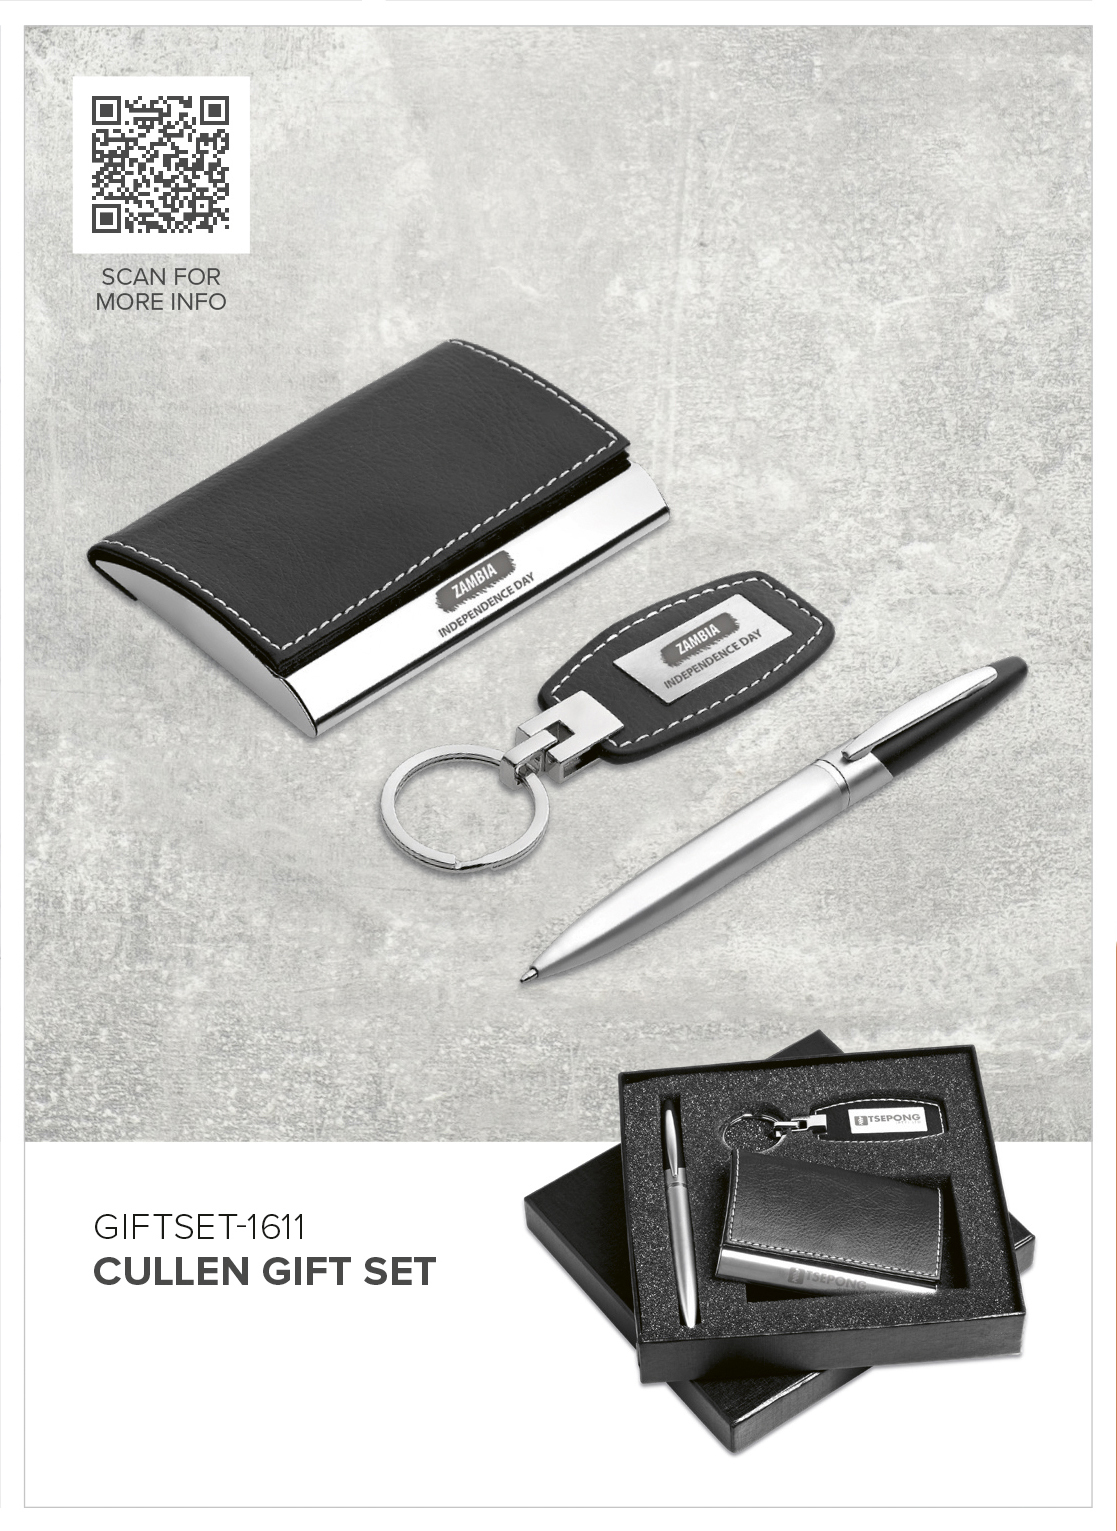 Cullen Gift Set